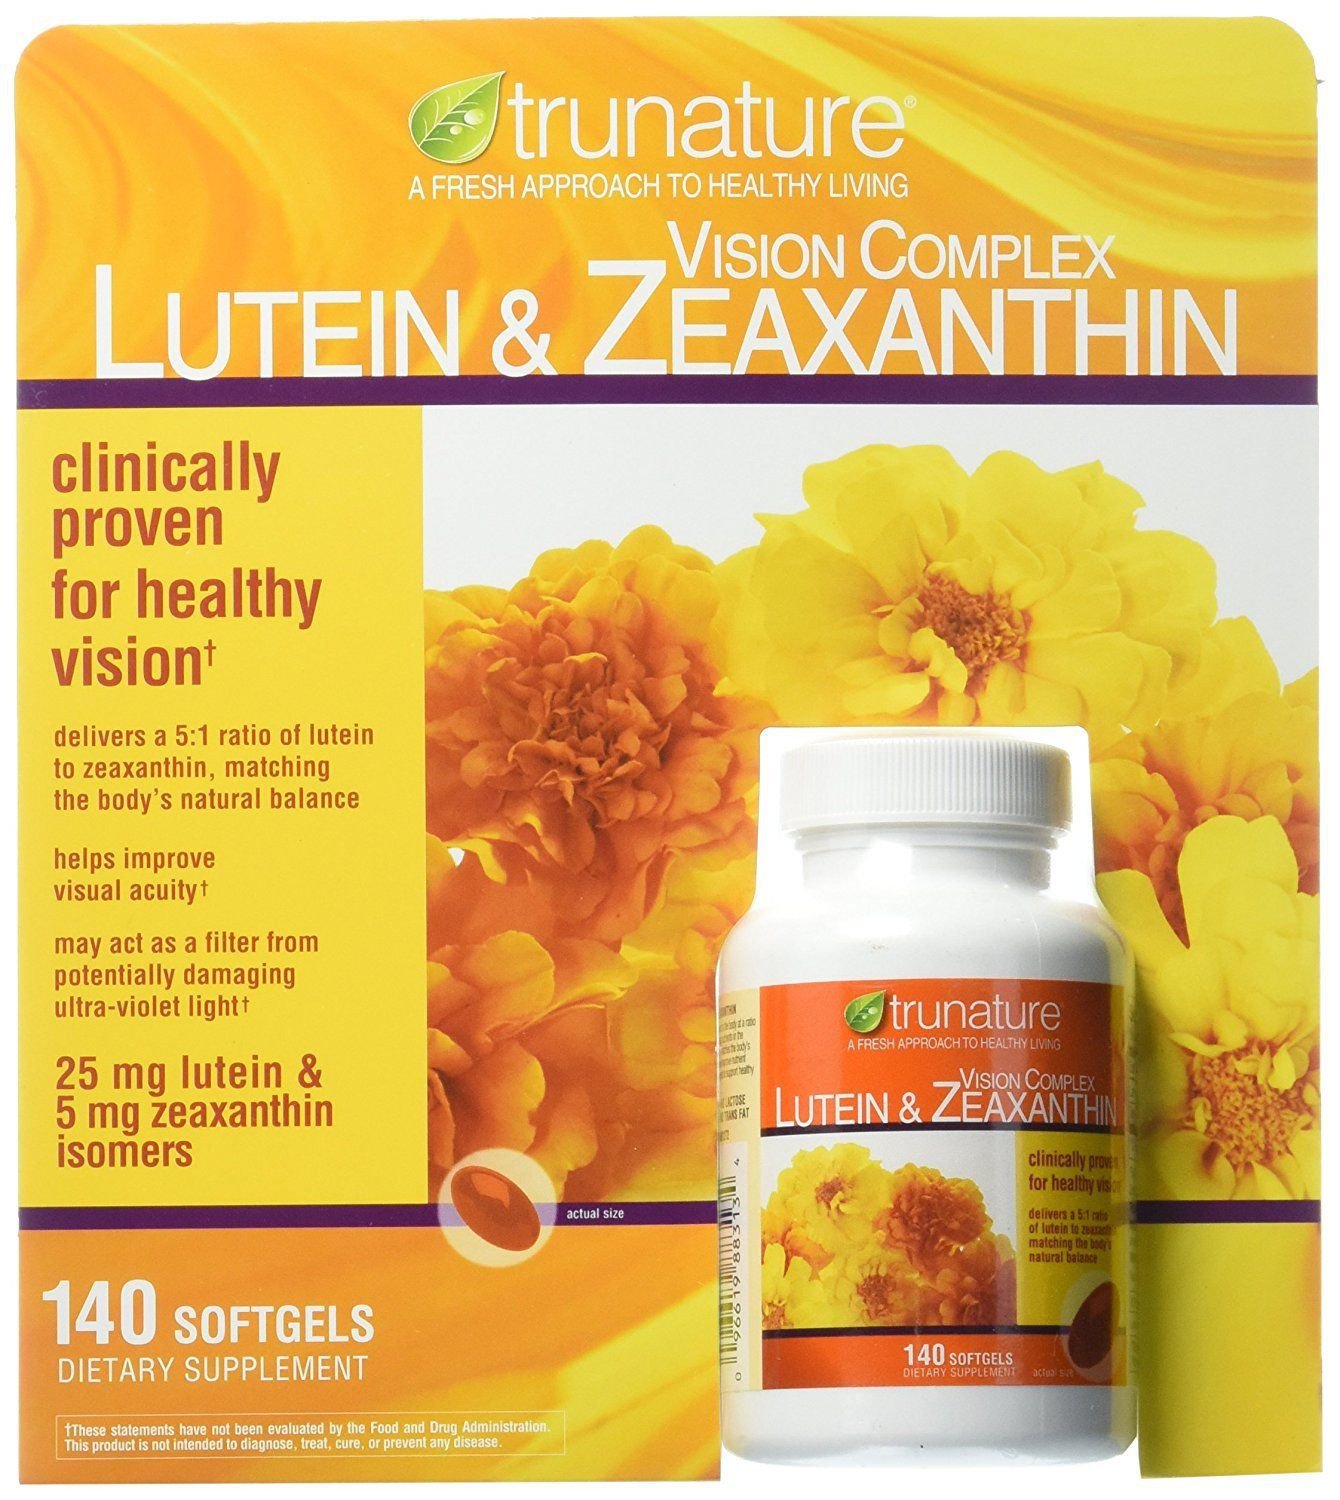 trunature Vision Complex Lutein & Zeaxanthin, 140 Softgels (1 bottle)